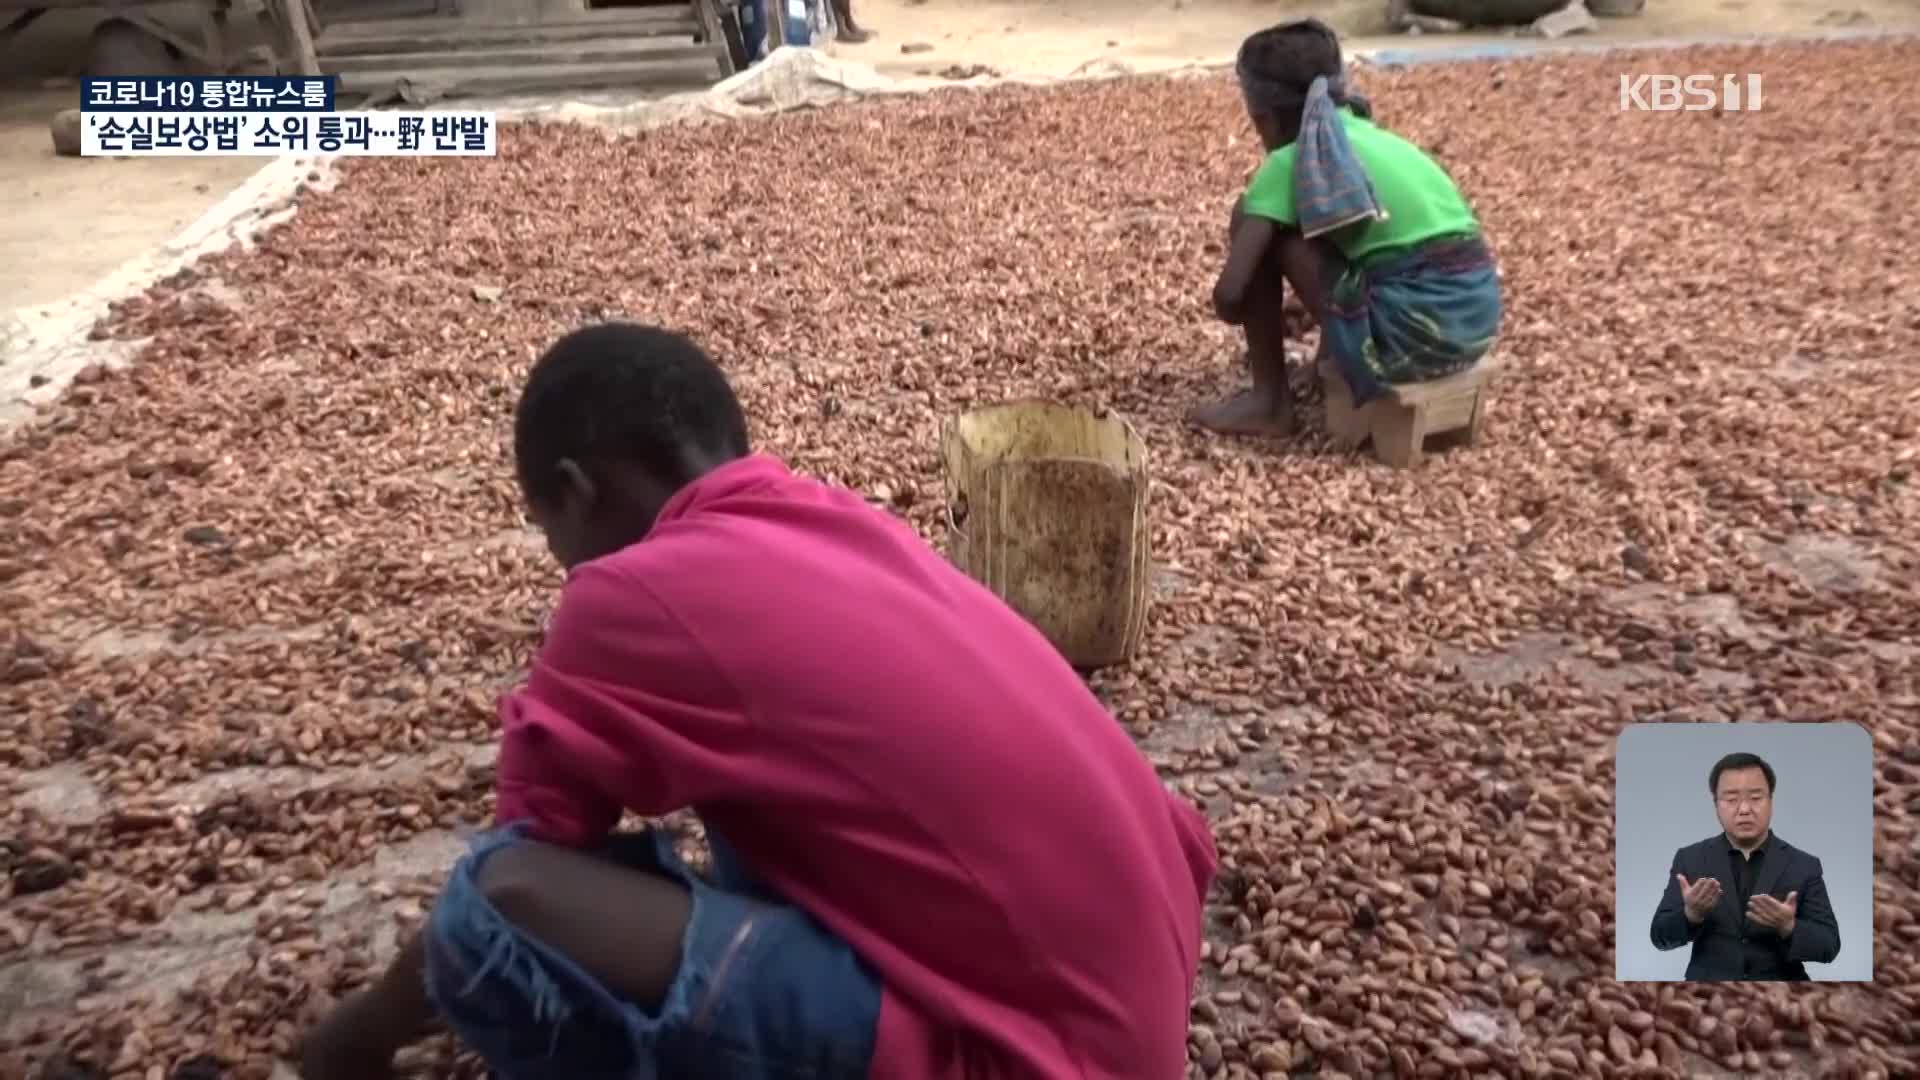 코트디부아르 카카오 농장 어린이 노동 심각